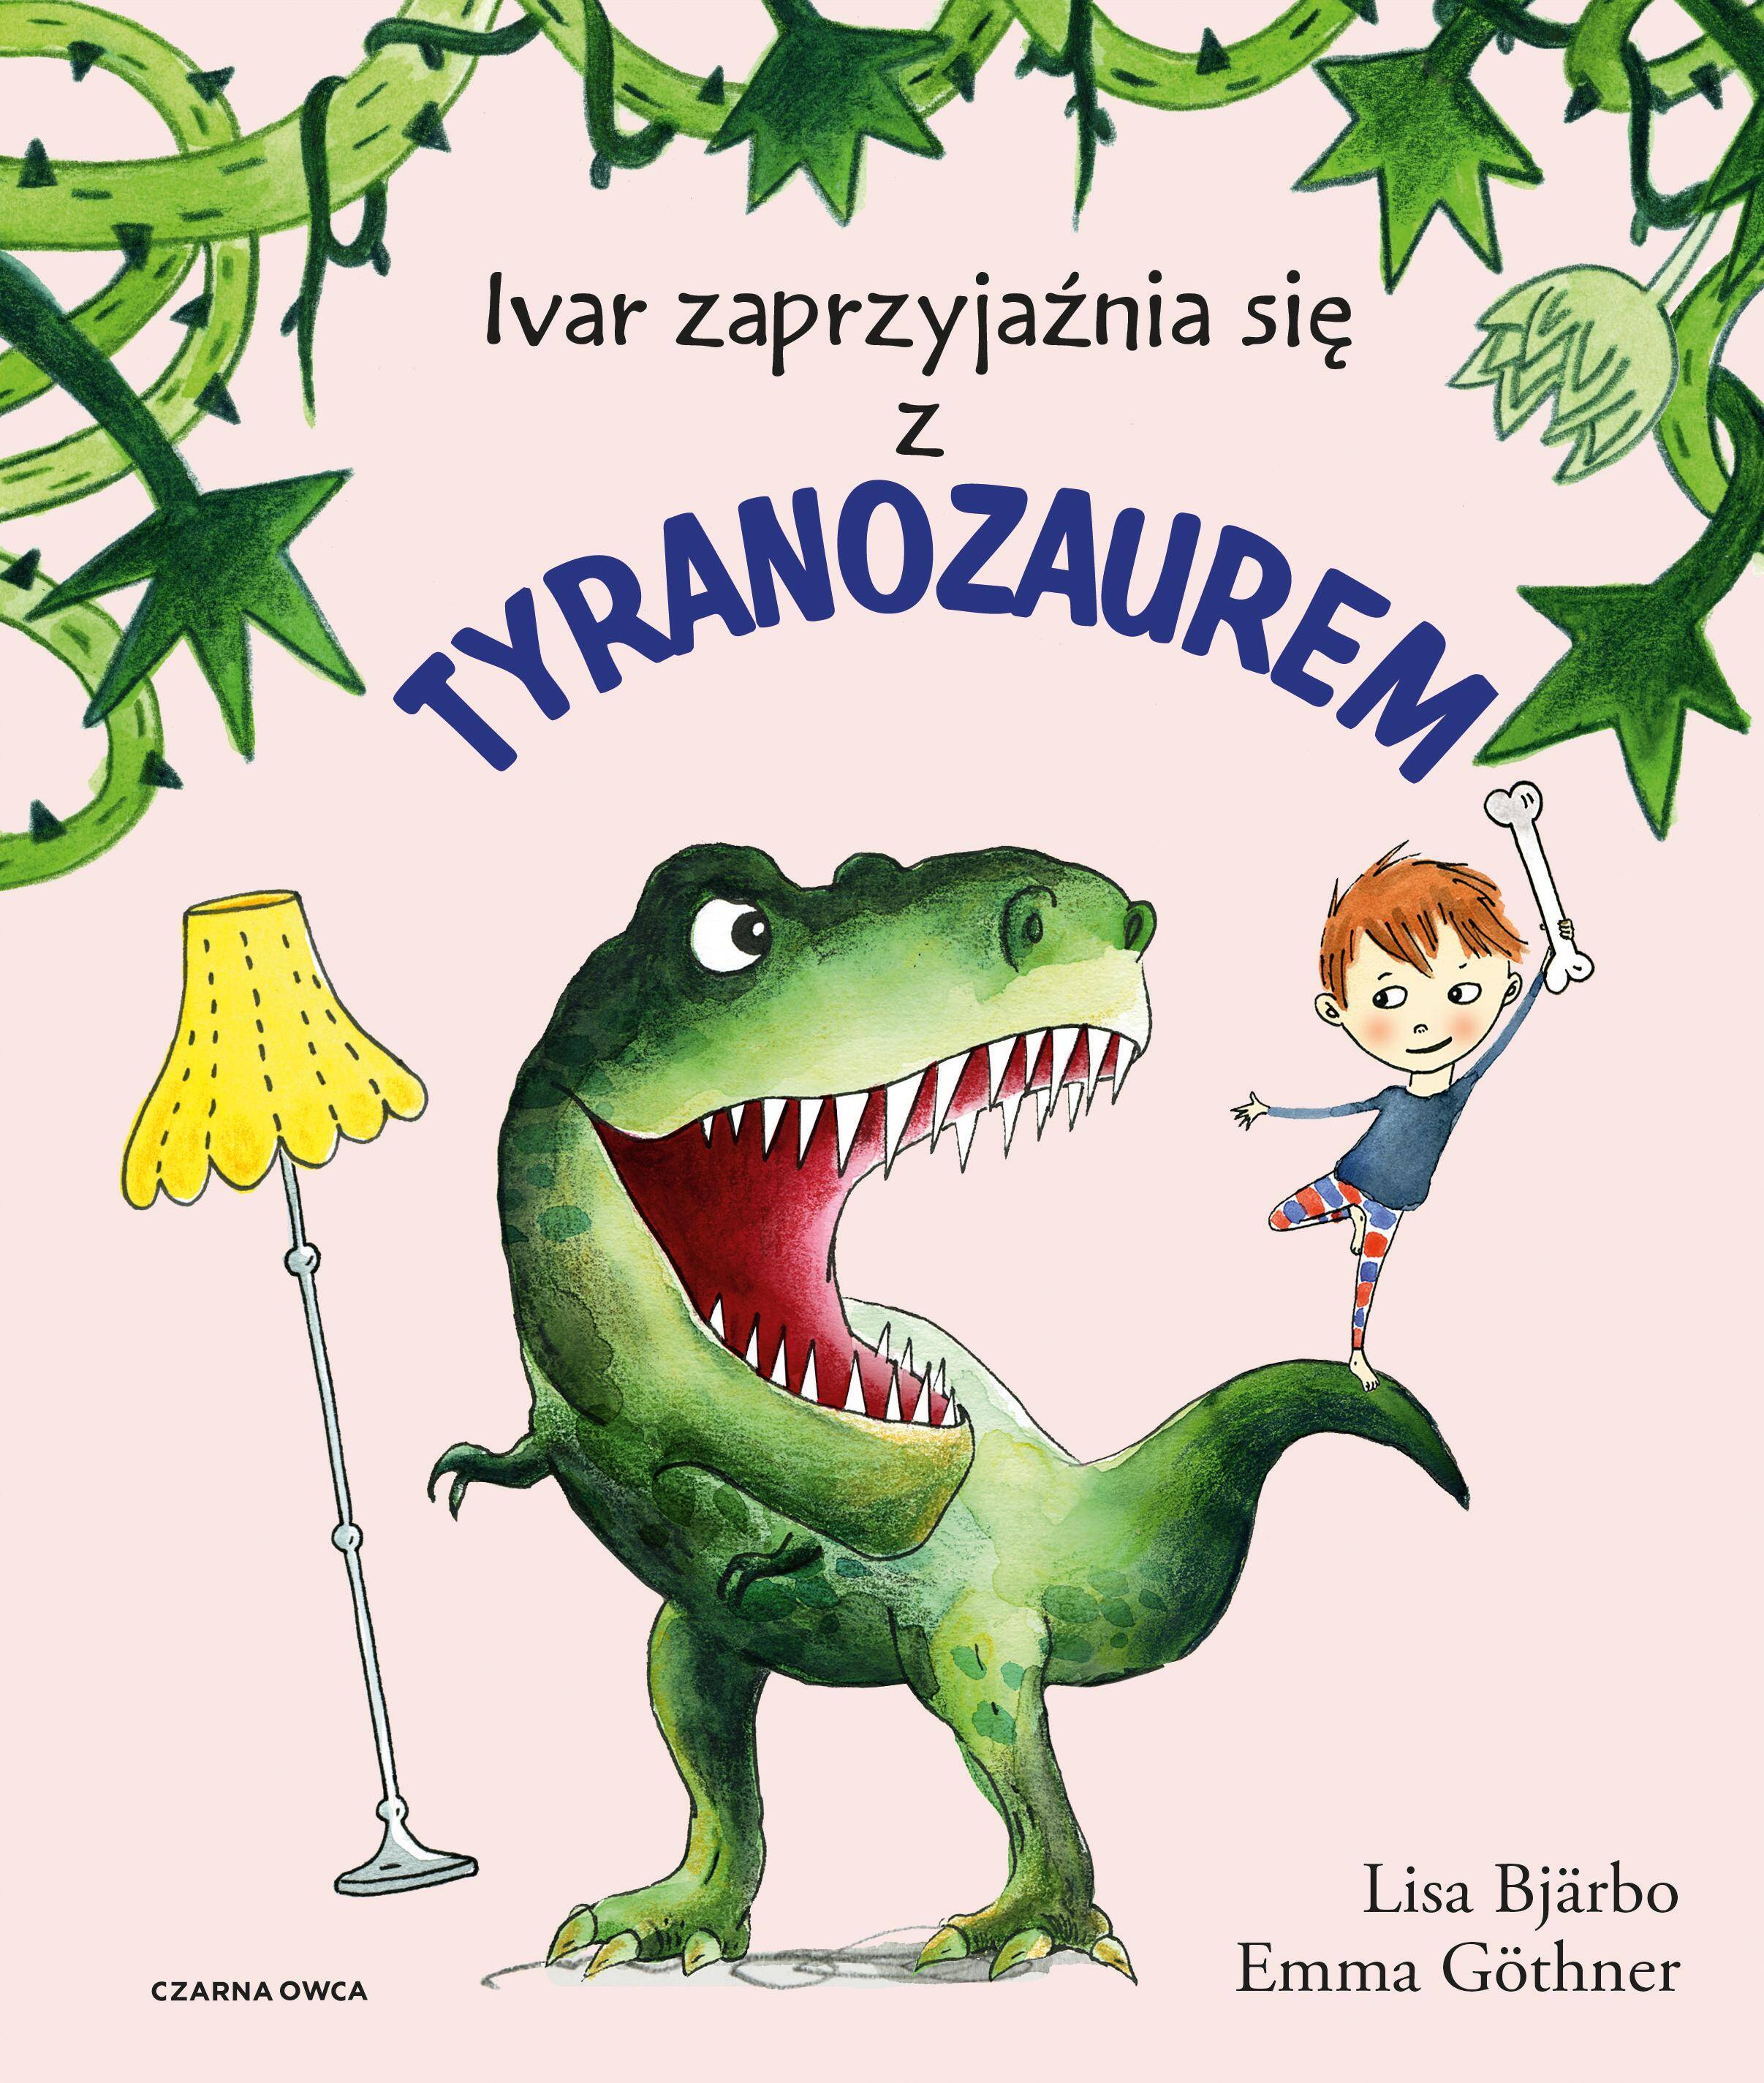 Ivar zaprzyjaźnia się z tyranozaurem wyd. 2